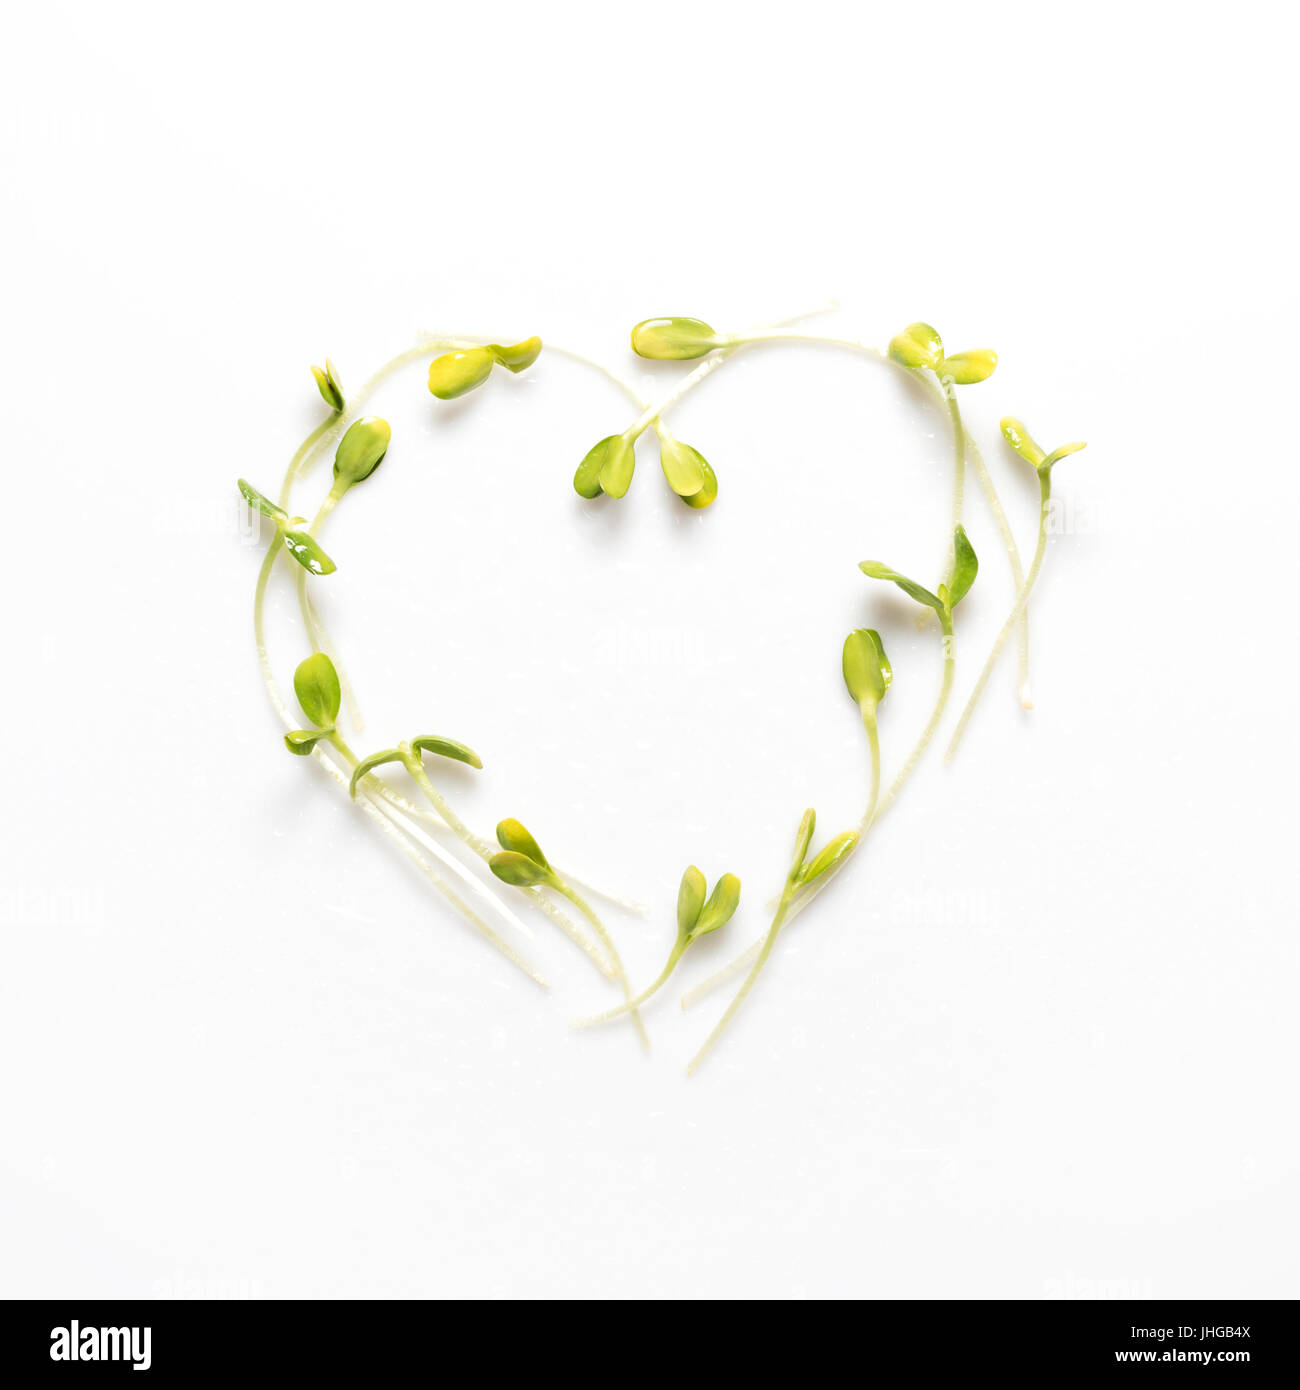 Mikro Grüns in Form von Herzen auf weißem Hintergrund angeordnet. Sonnenblumen-Sprossen, Luzern, Microgreens. Flach zu legen. Natur und gesunde Ernährung, Diät, Eco-Konzept. Stockfoto